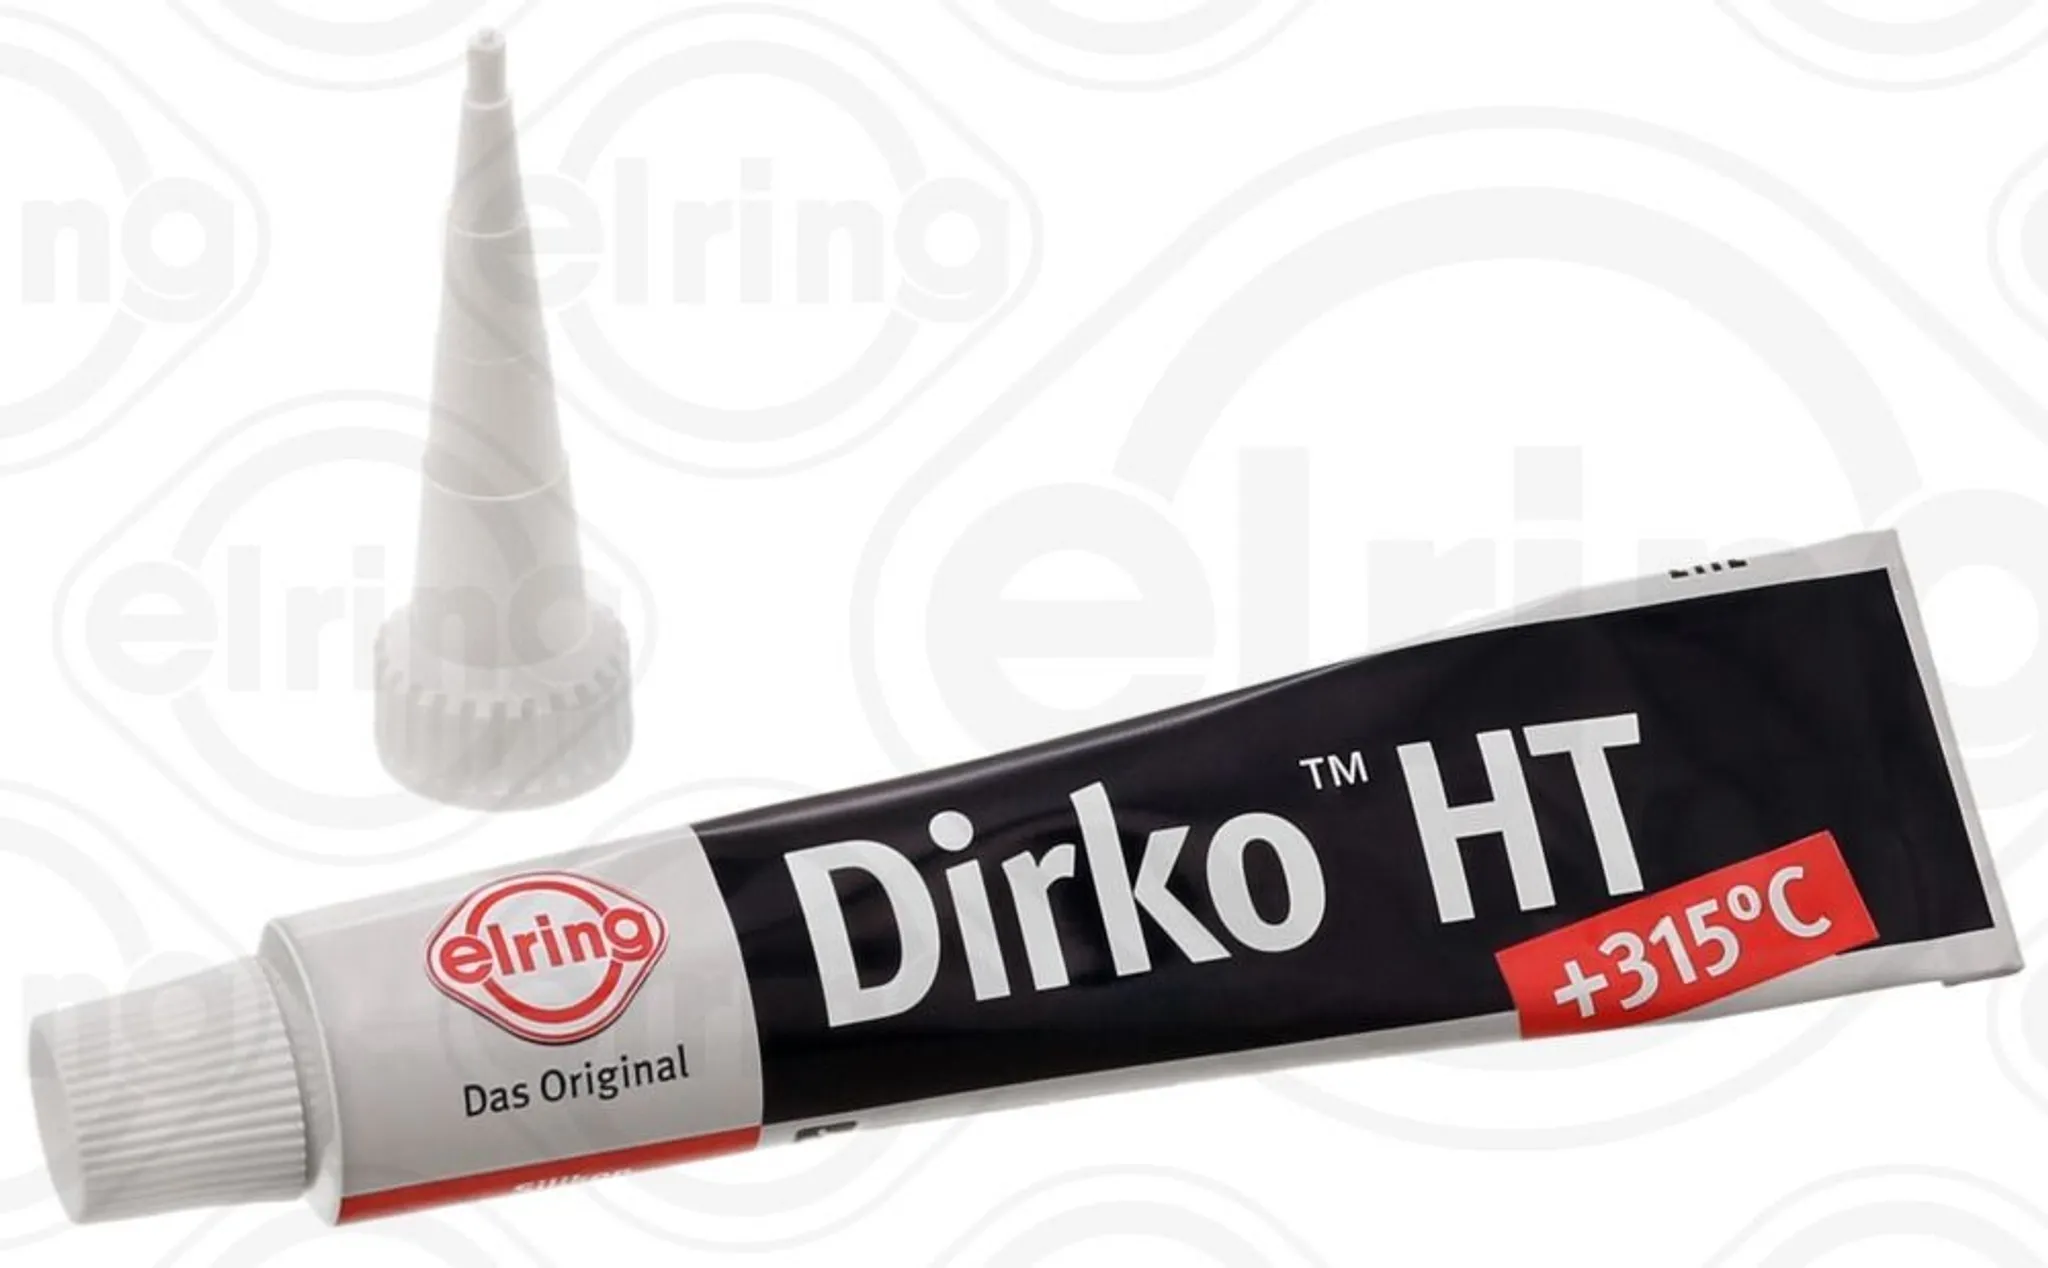 Dirko Dichtmasse HT schwarz (-60 bis +315°C), 70ml, inkl. Dosiertülle